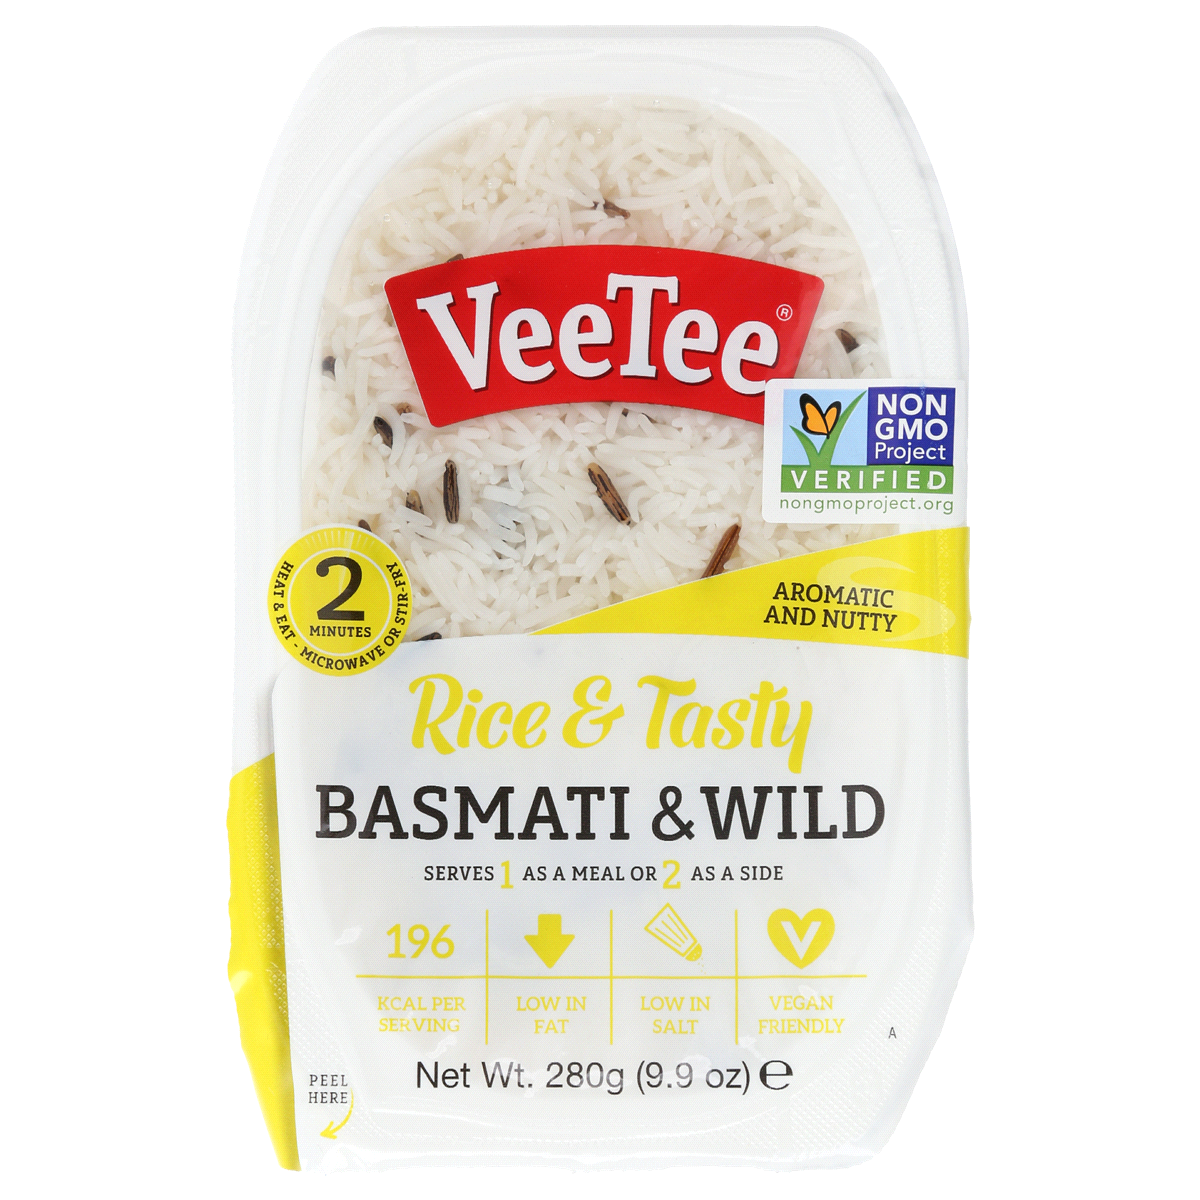 slide 1 of 5, VeeTee Basmati & Wild Rice 9.9 oz, 9.9 oz